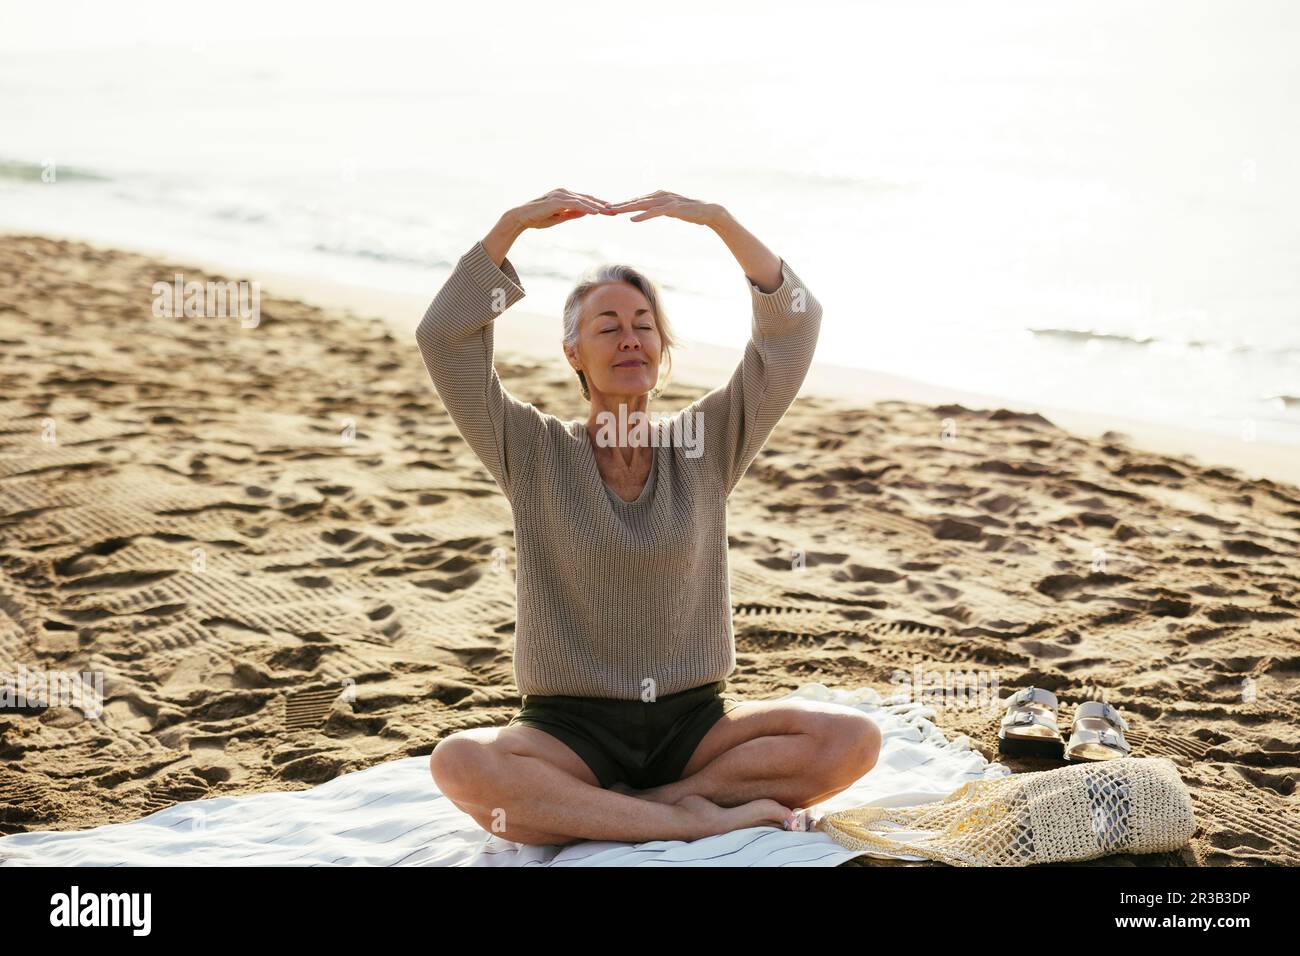 Coperta da yoga immagini e fotografie stock ad alta risoluzione - Alamy